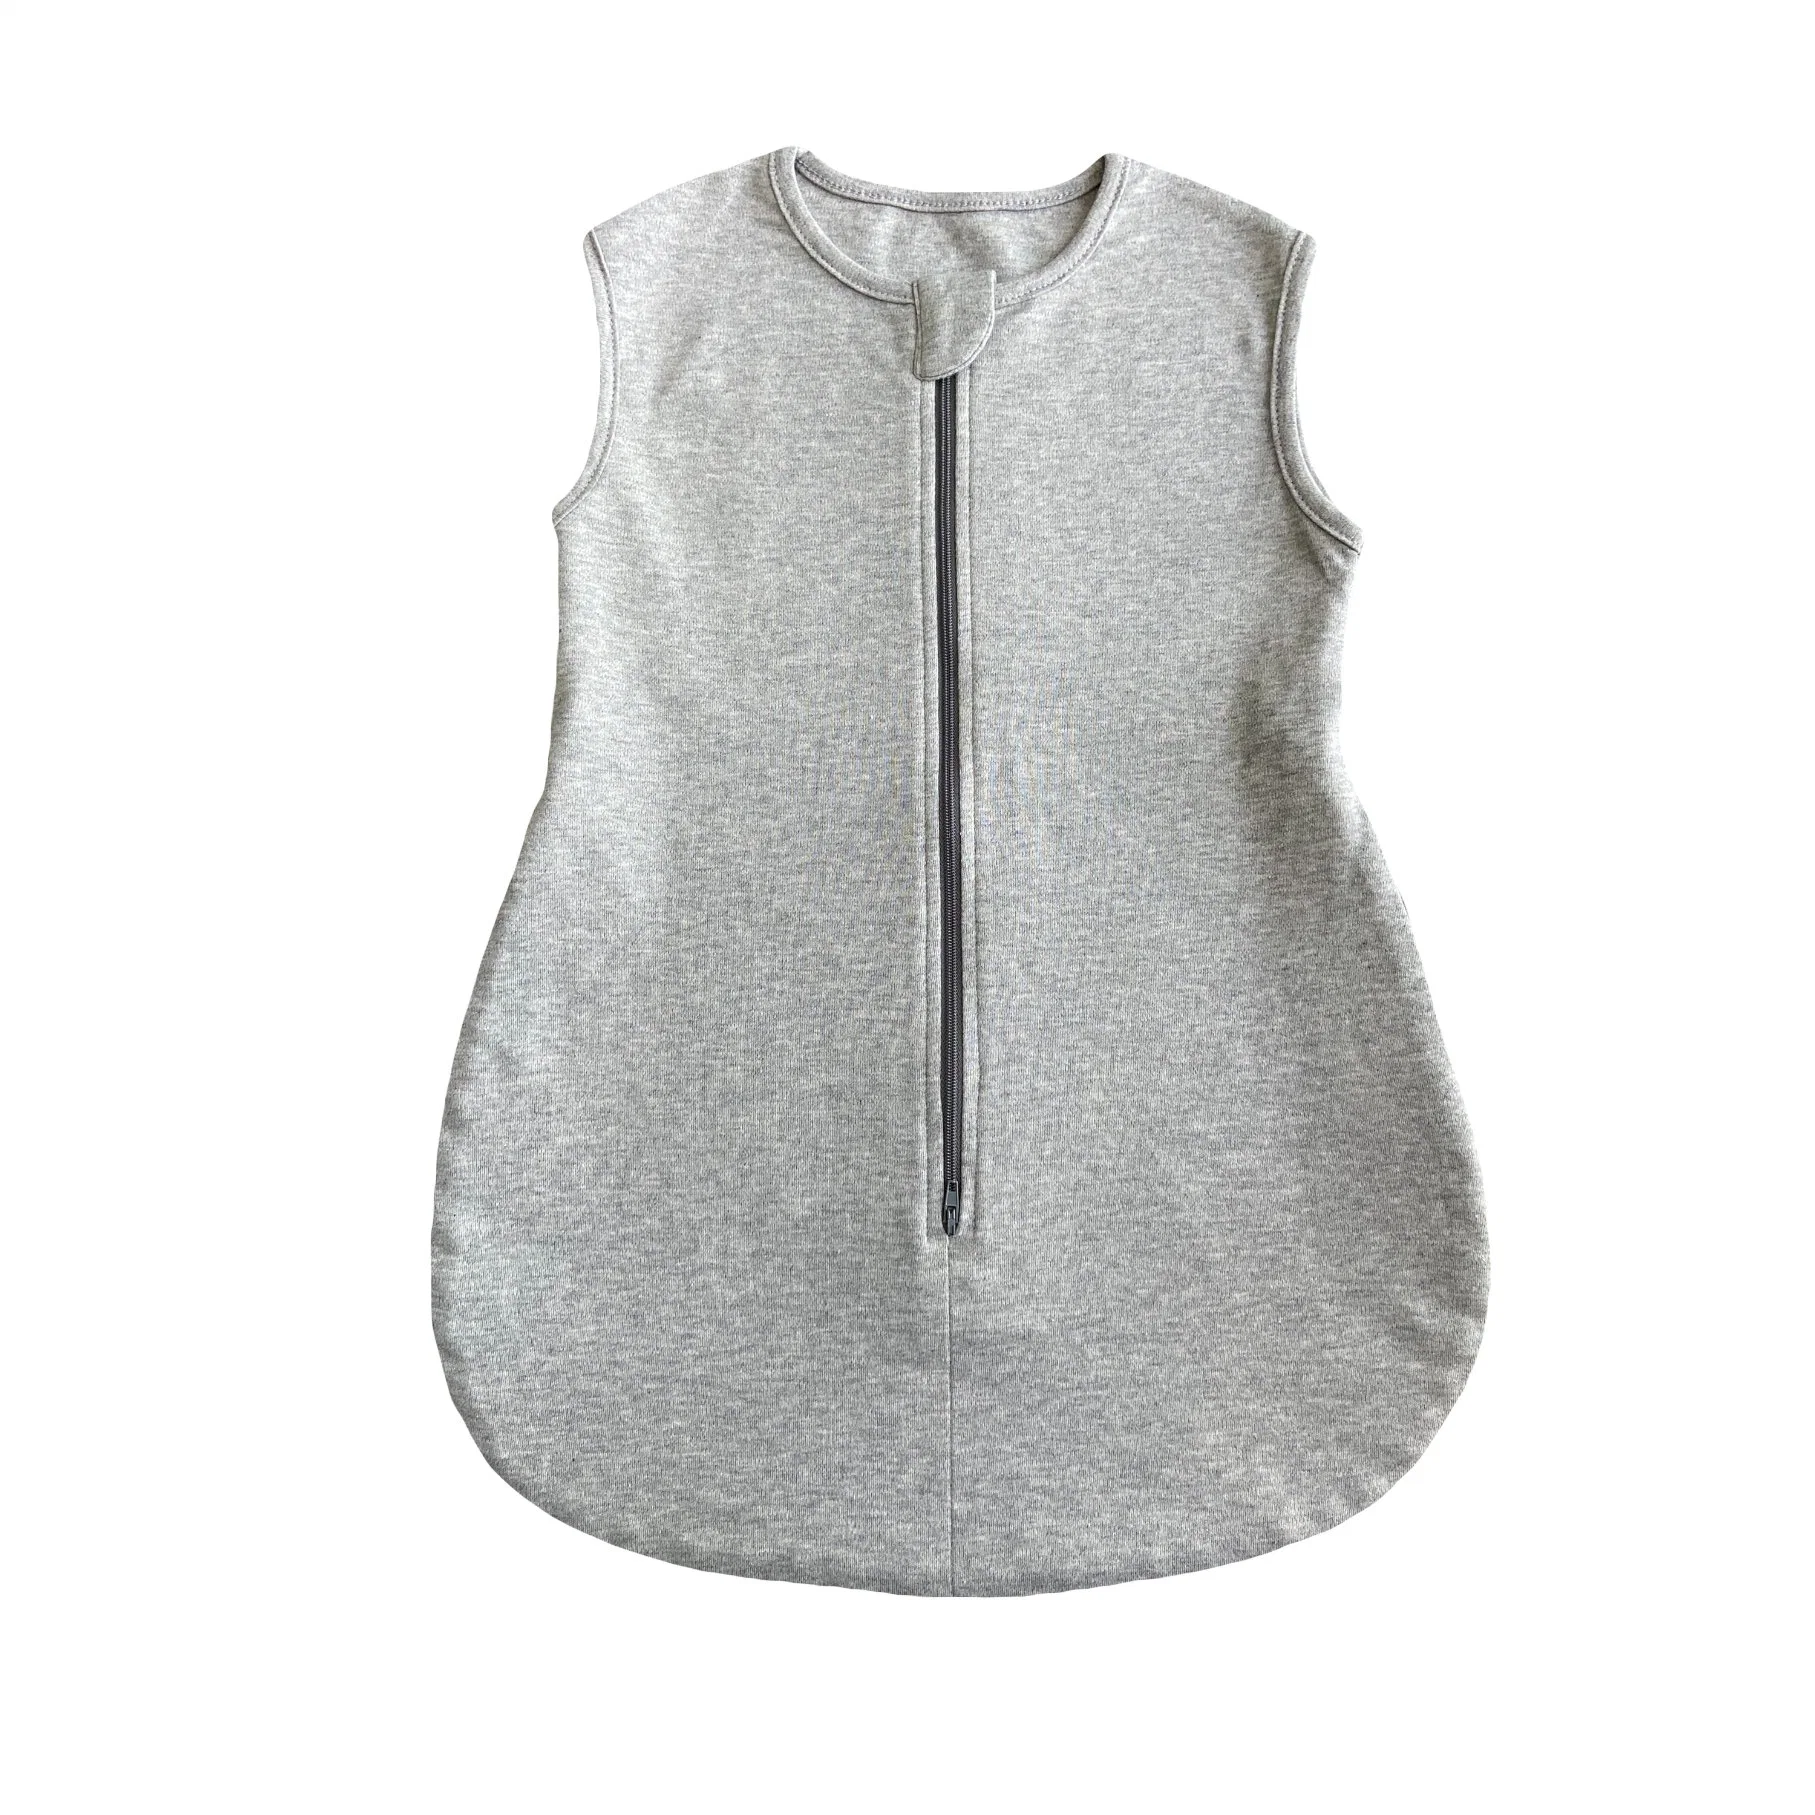 Fabricar saco para dormir sem mangas em tecido de algodão para bebé confortável e suave para a pele Saco de dormir